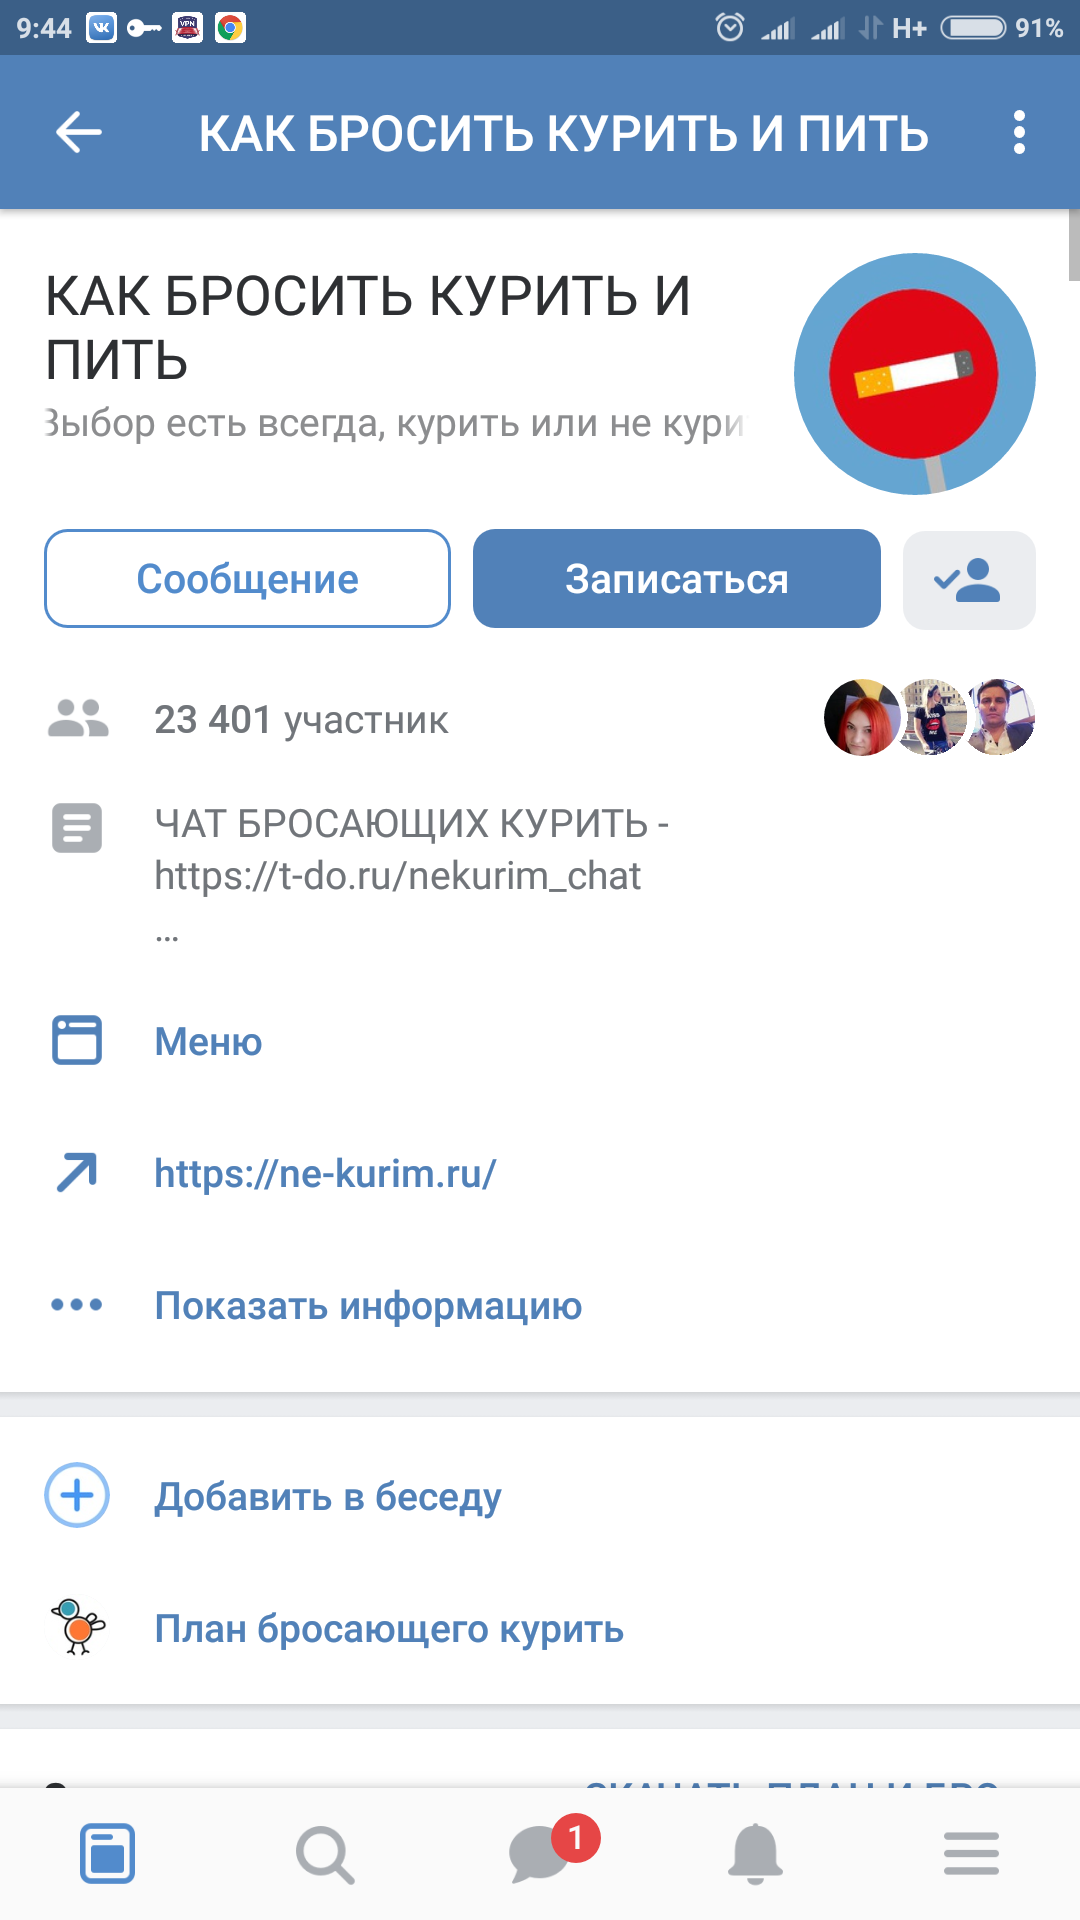 Screenshot_2018-09-24-09-44-42-606_com.vkontakte.android.png